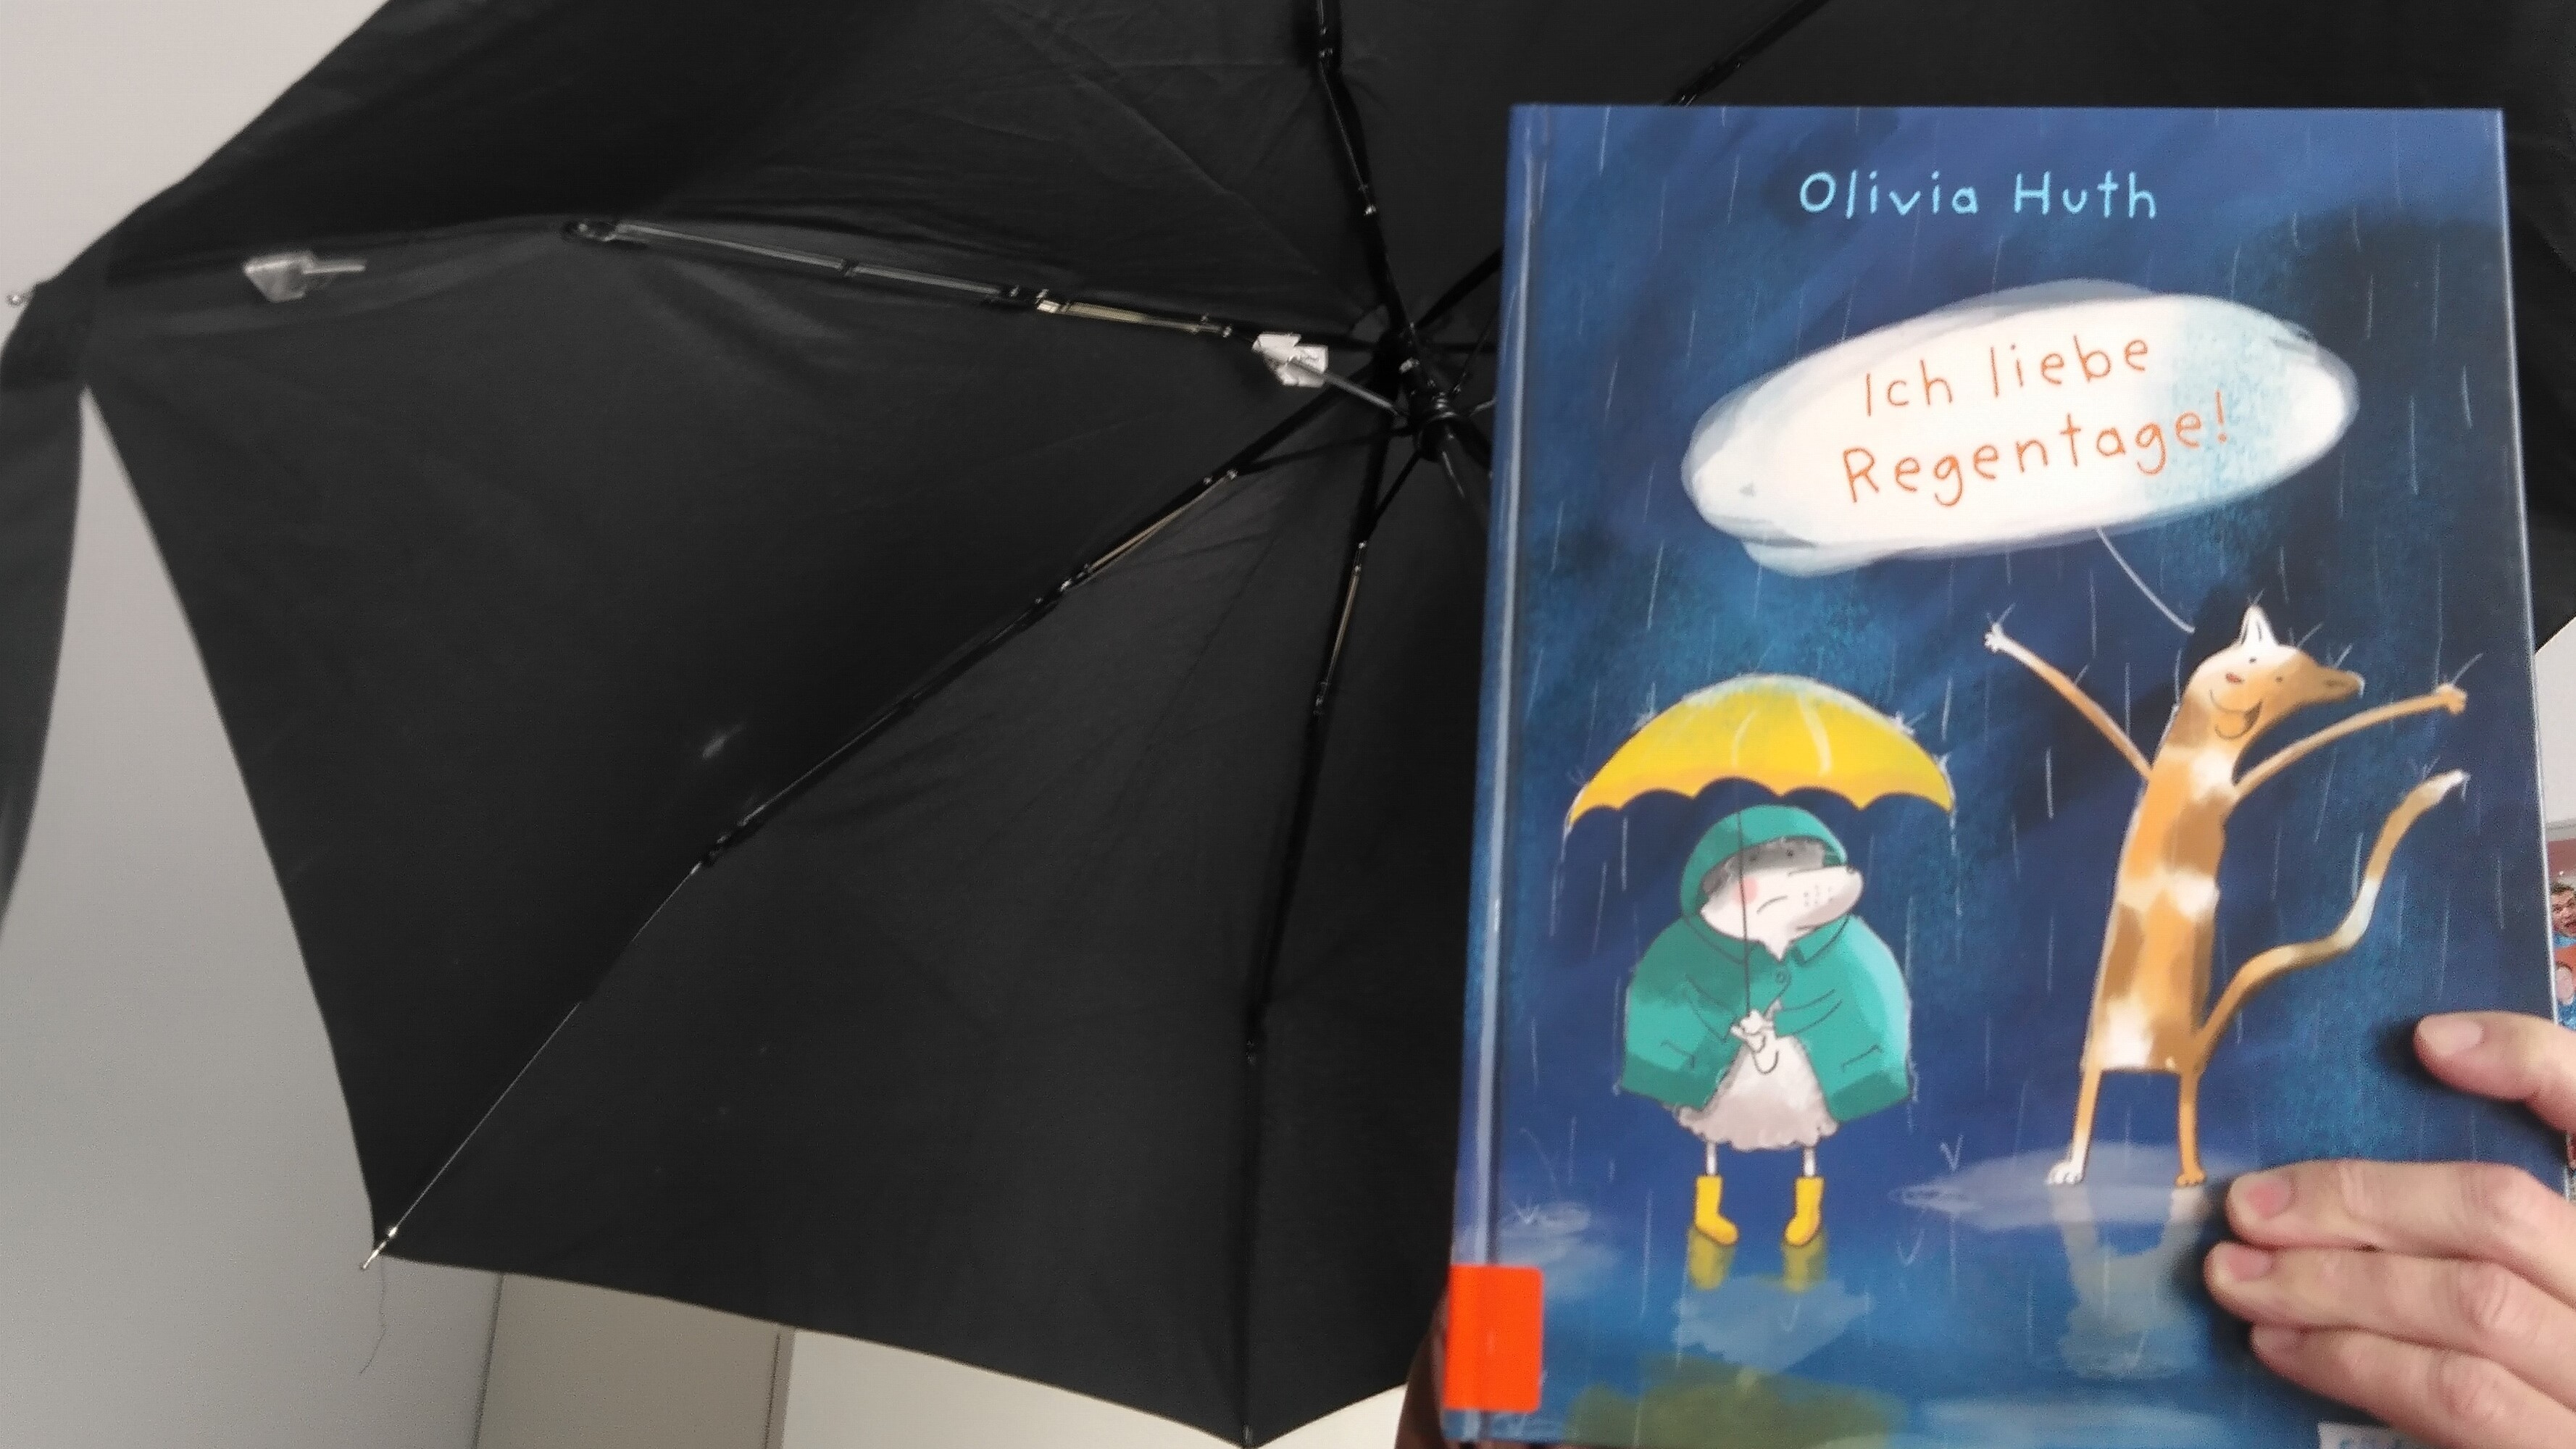 Buchcover "Ich liebe Regentage" von Olivia Huth